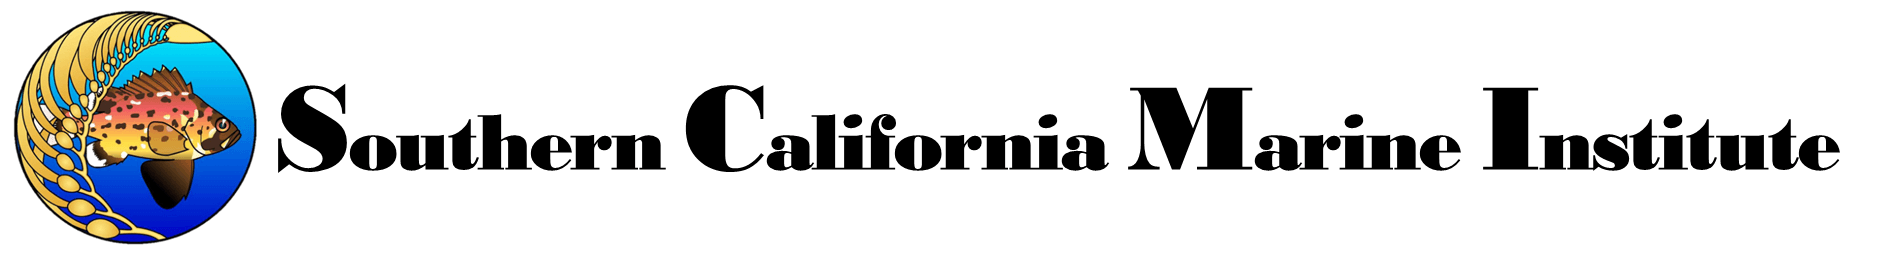 California Title Logo - scmi.net. Southern California Marine Institute